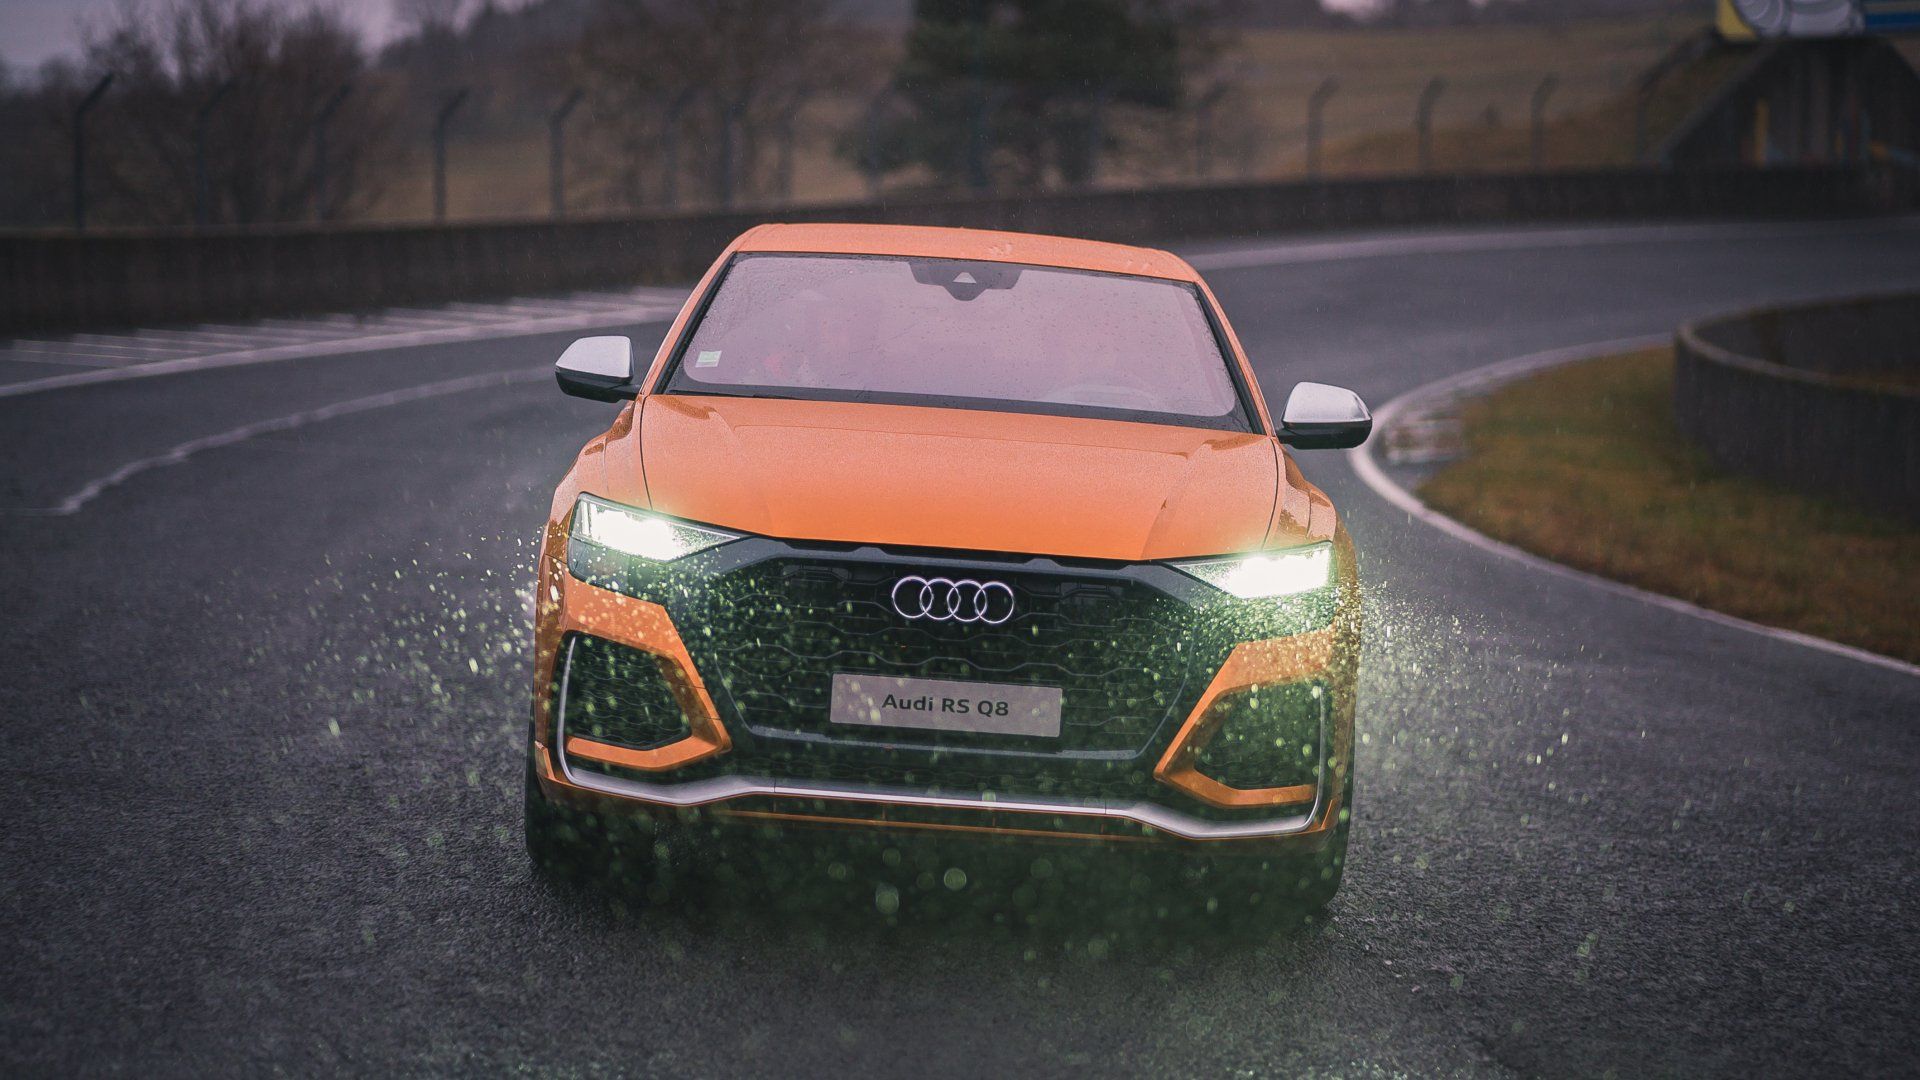 Orange Audi RS Q8 driving in the rain